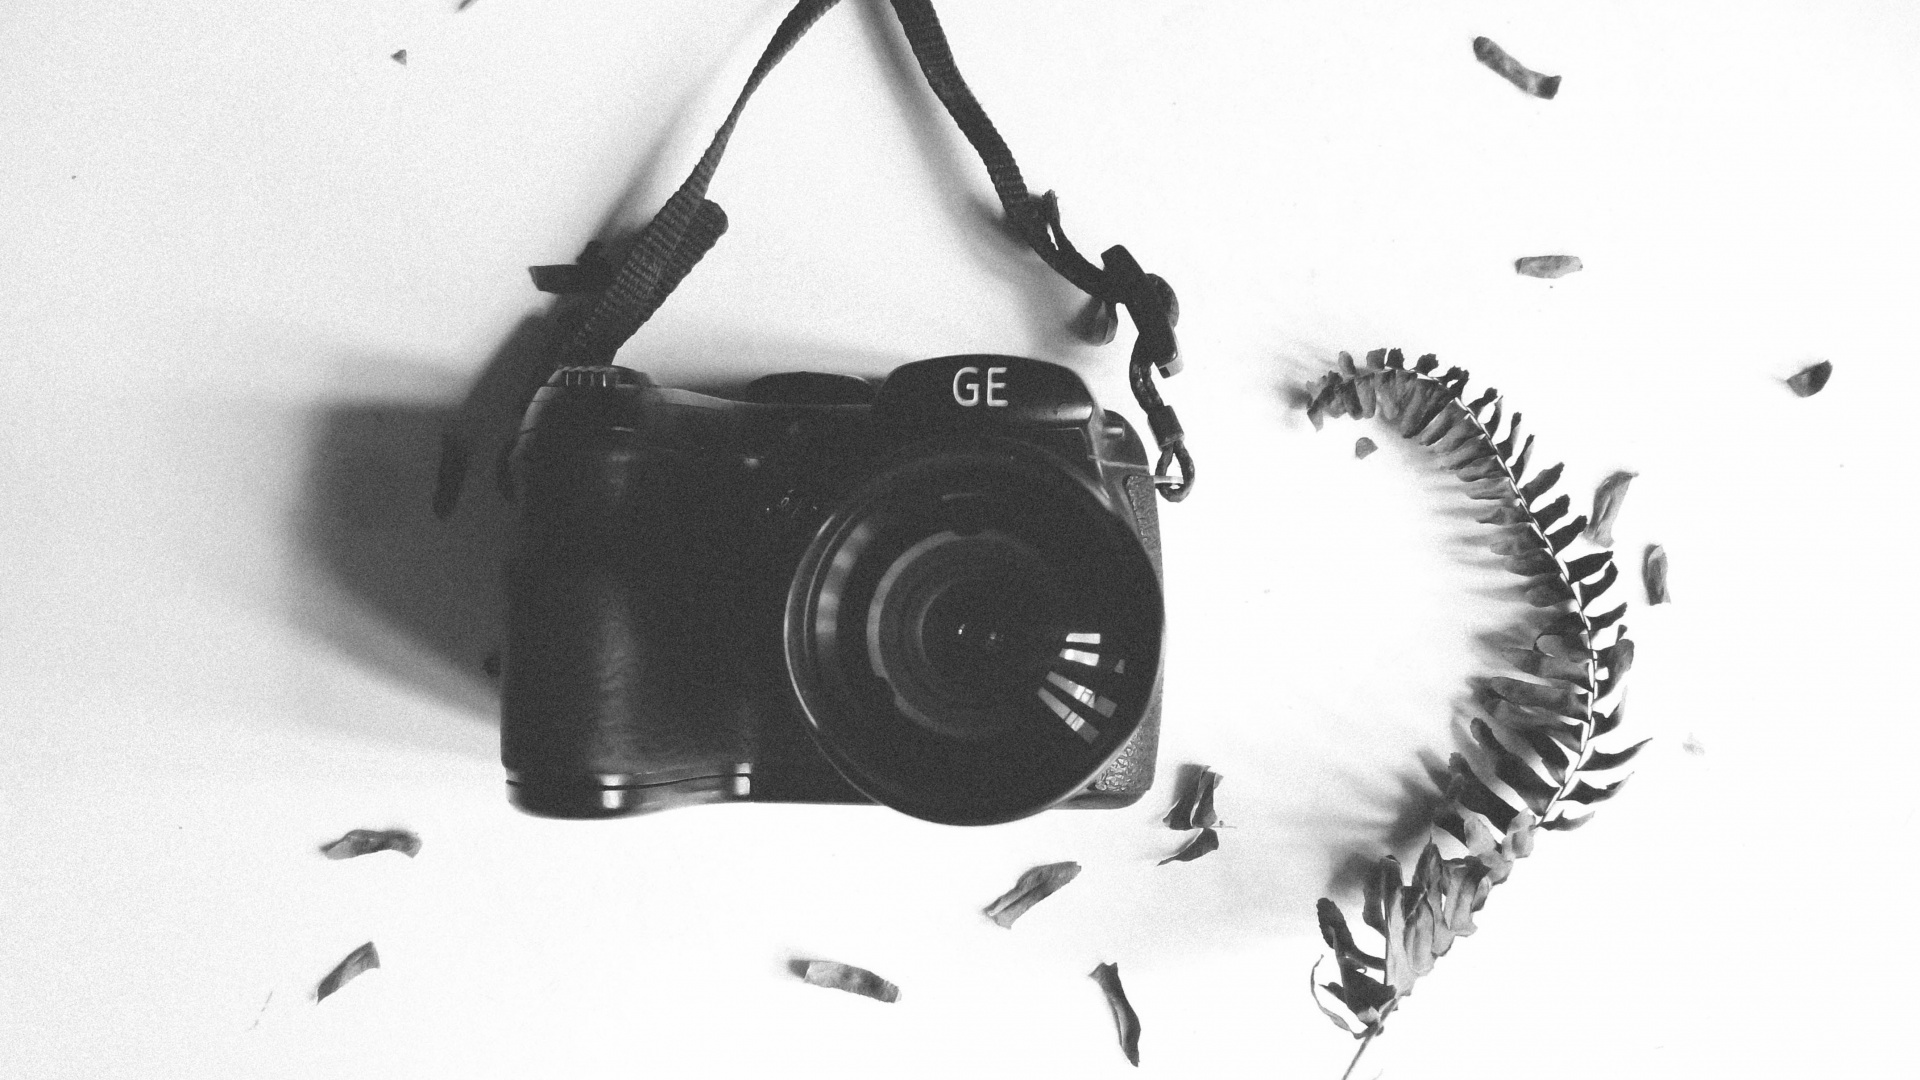 Schwarze Nikon Dslr Kamera Auf Weißem Textil. Wallpaper in 1920x1080 Resolution